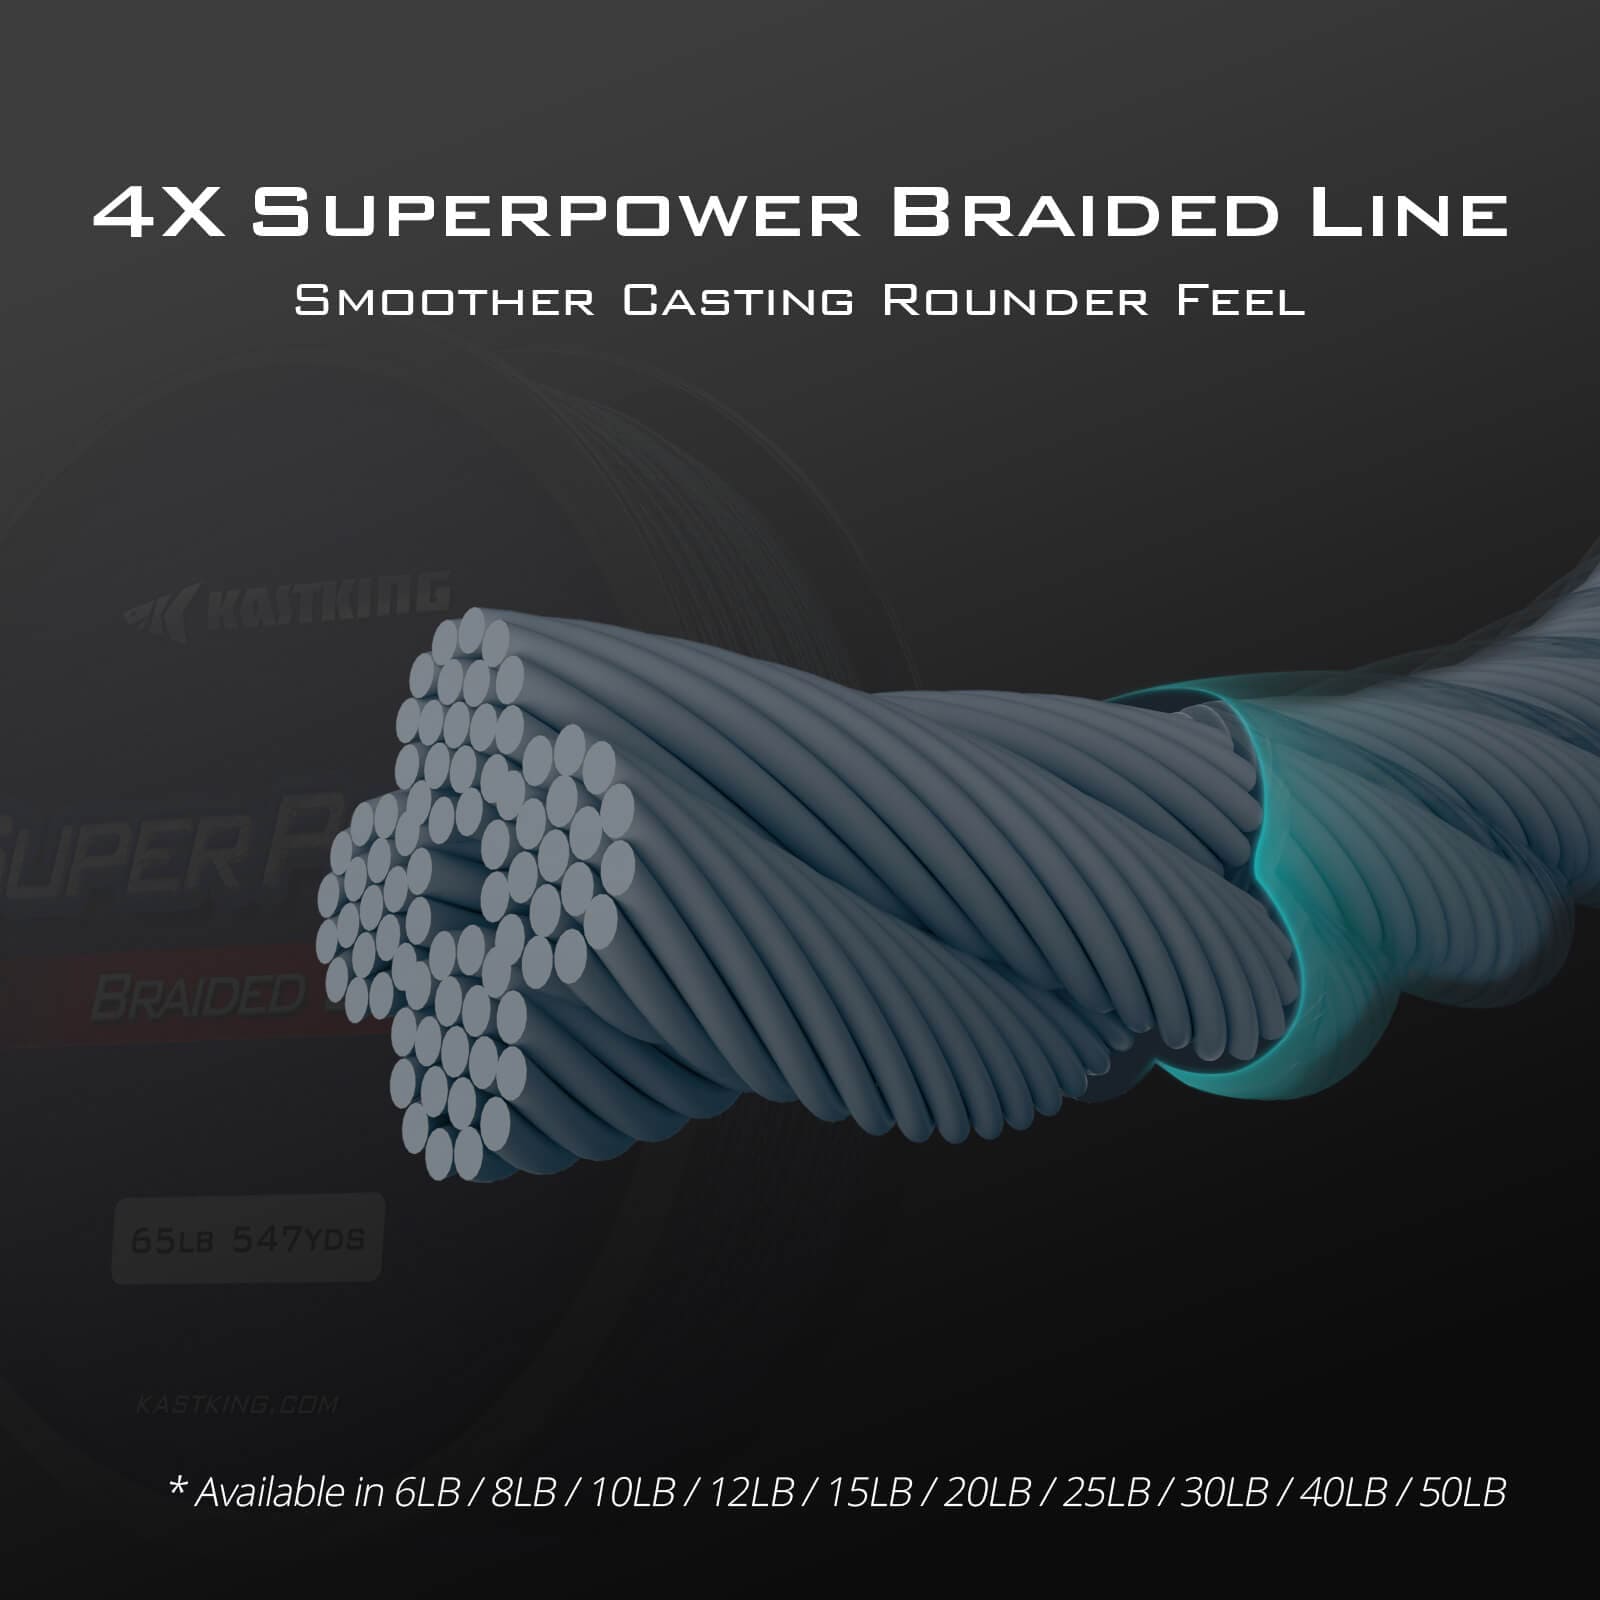 KastKing SuperPower Braid test - FAIL 